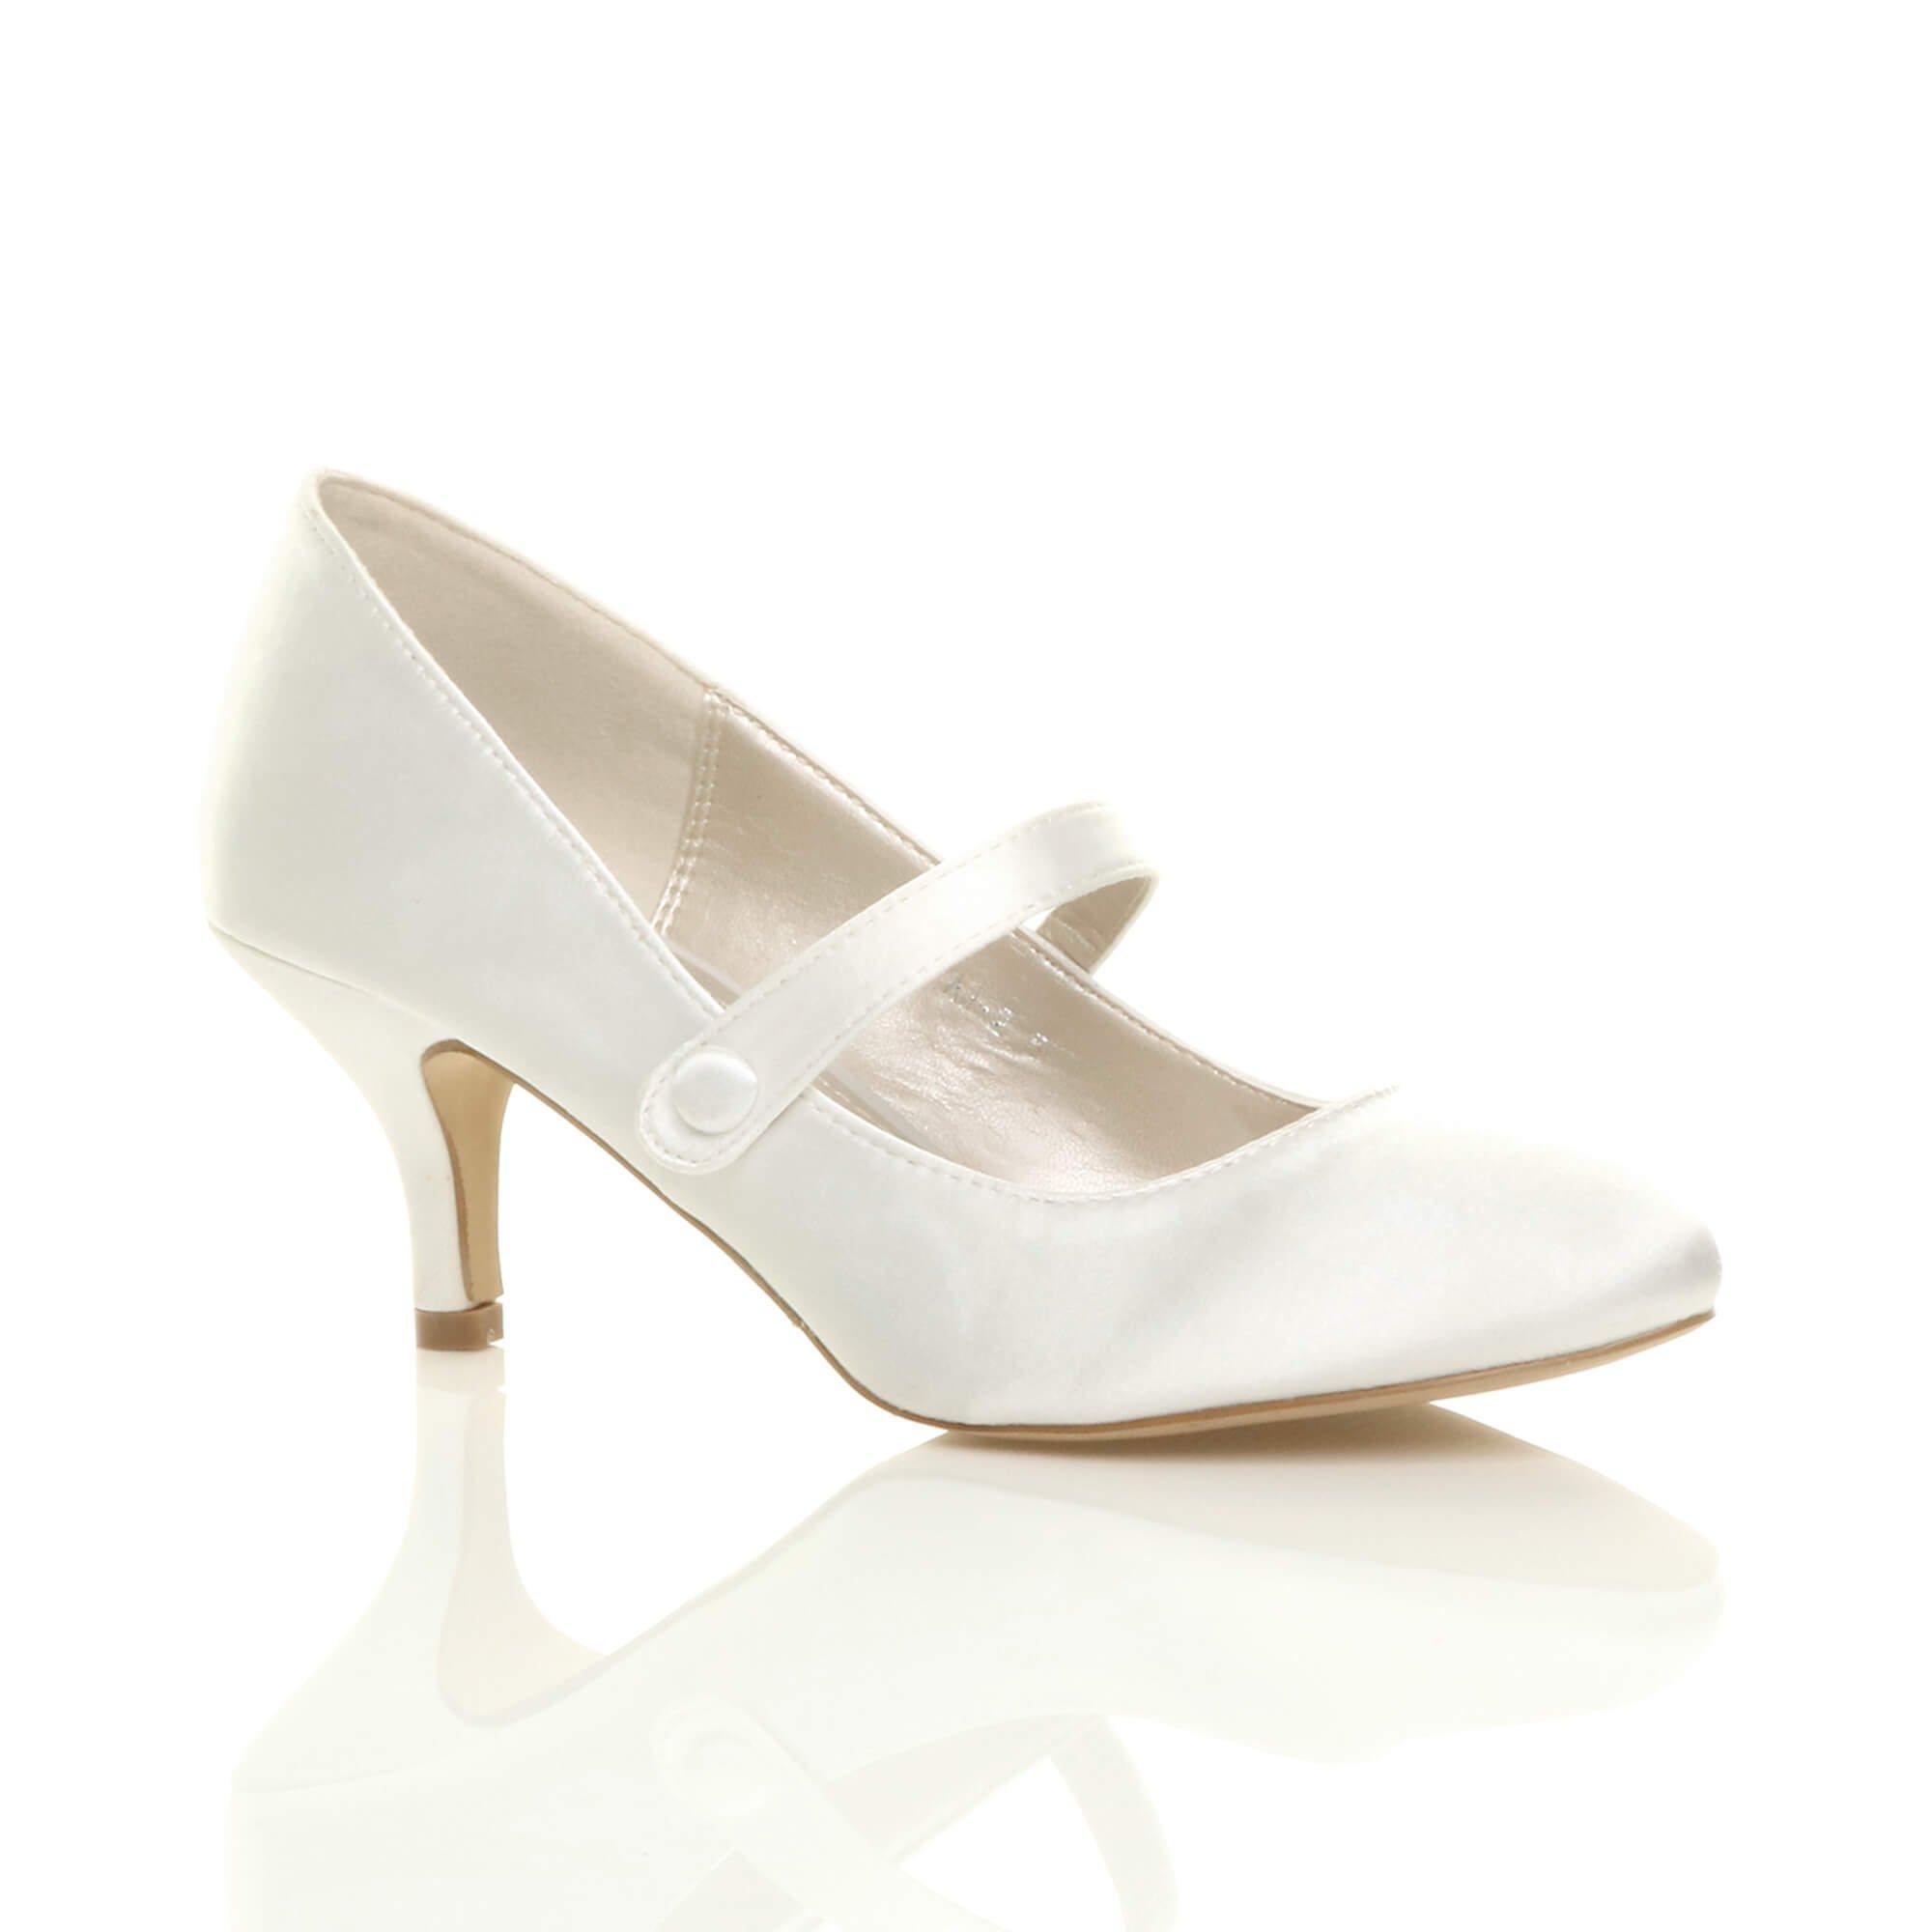 Атласные туфли-лодочки Мэри Джейн на среднем каблуке-котенке AJVANI, белый туфли лодочки женские на платформе классические свадебные туфли мэри джейн средний каблук черные белые 2021